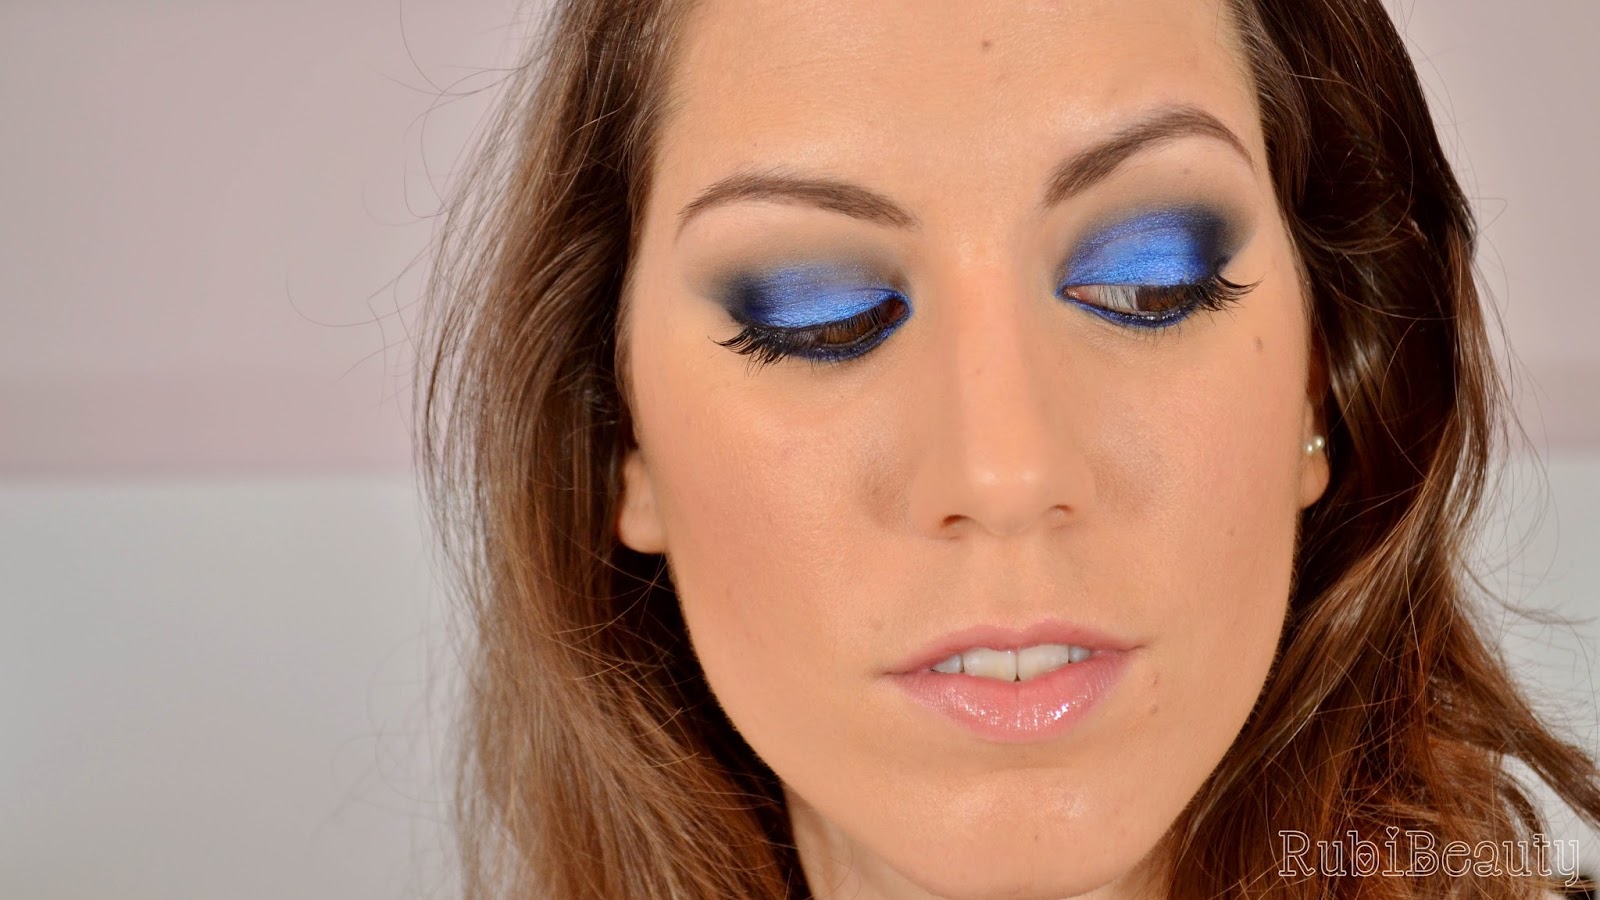 rrubibeauty maquillaje fiesta navidad christmas makeup xmas 2014 azul blue pigmentos